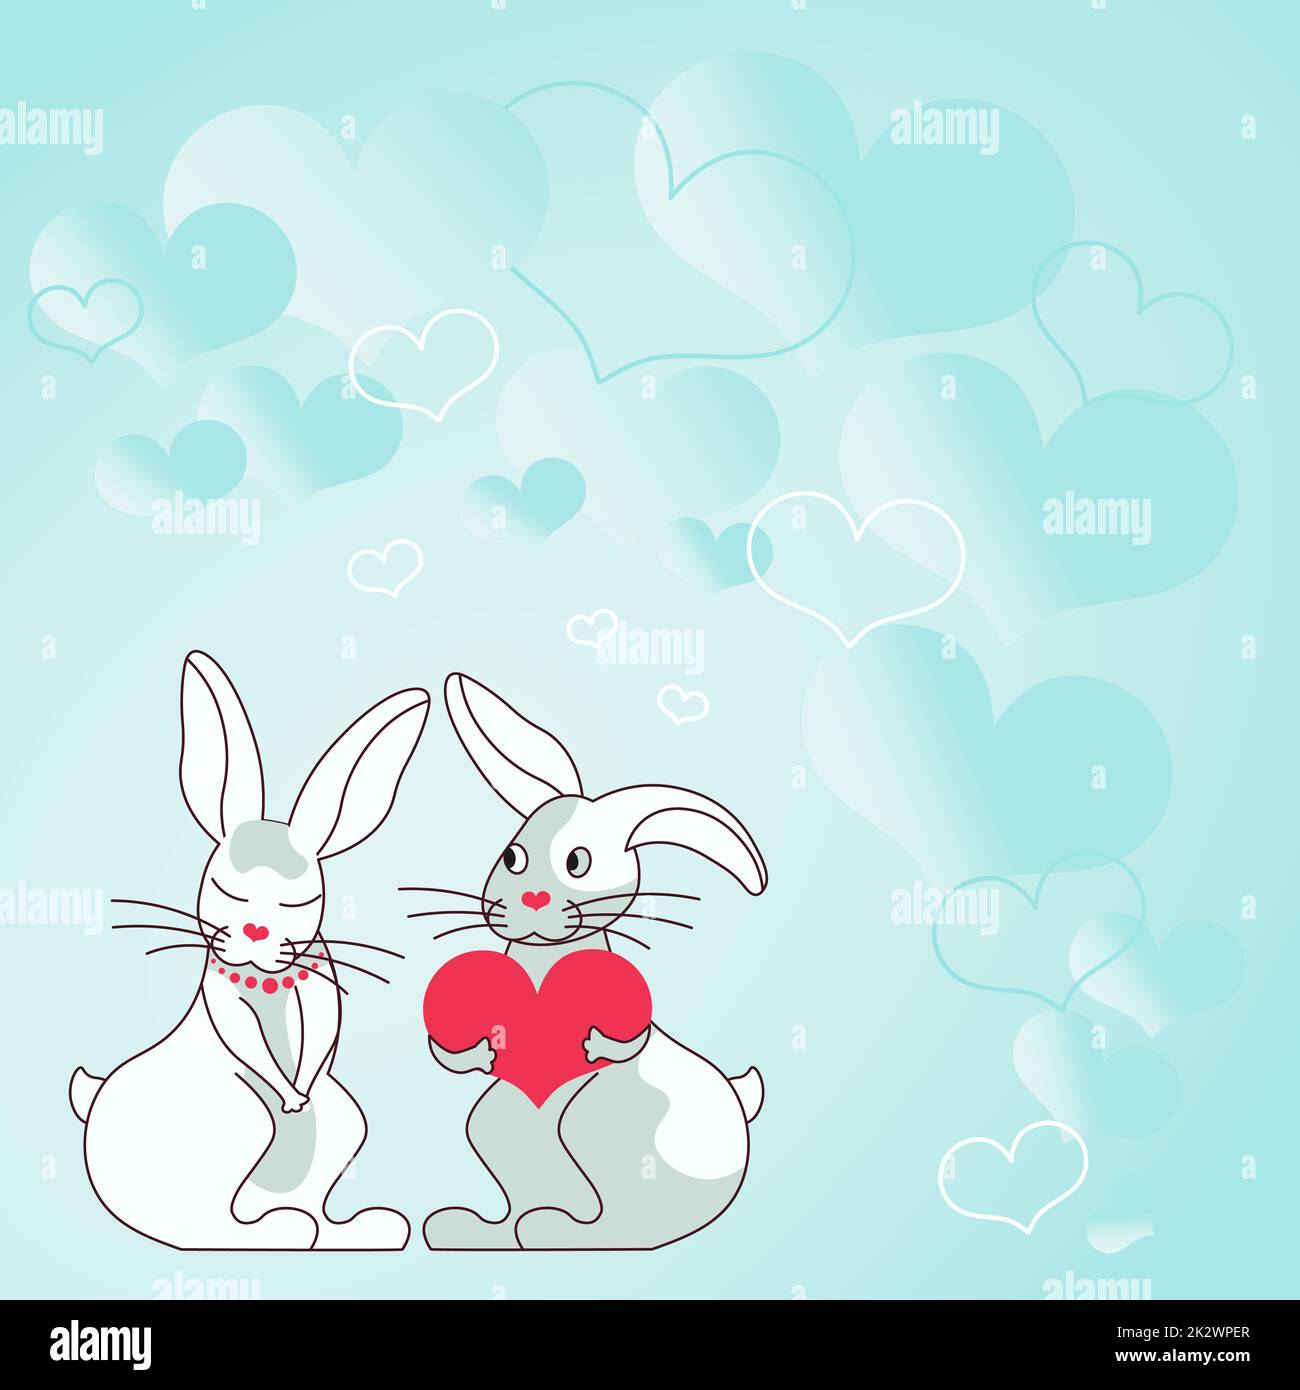 Due conigli con i regali a forma di cuore con la priorità bassa heartful dimostrano le coppie che scambiano le offerte. I coniglietti rappresentano amanti appassionati con regali incantevoli. Foto Stock